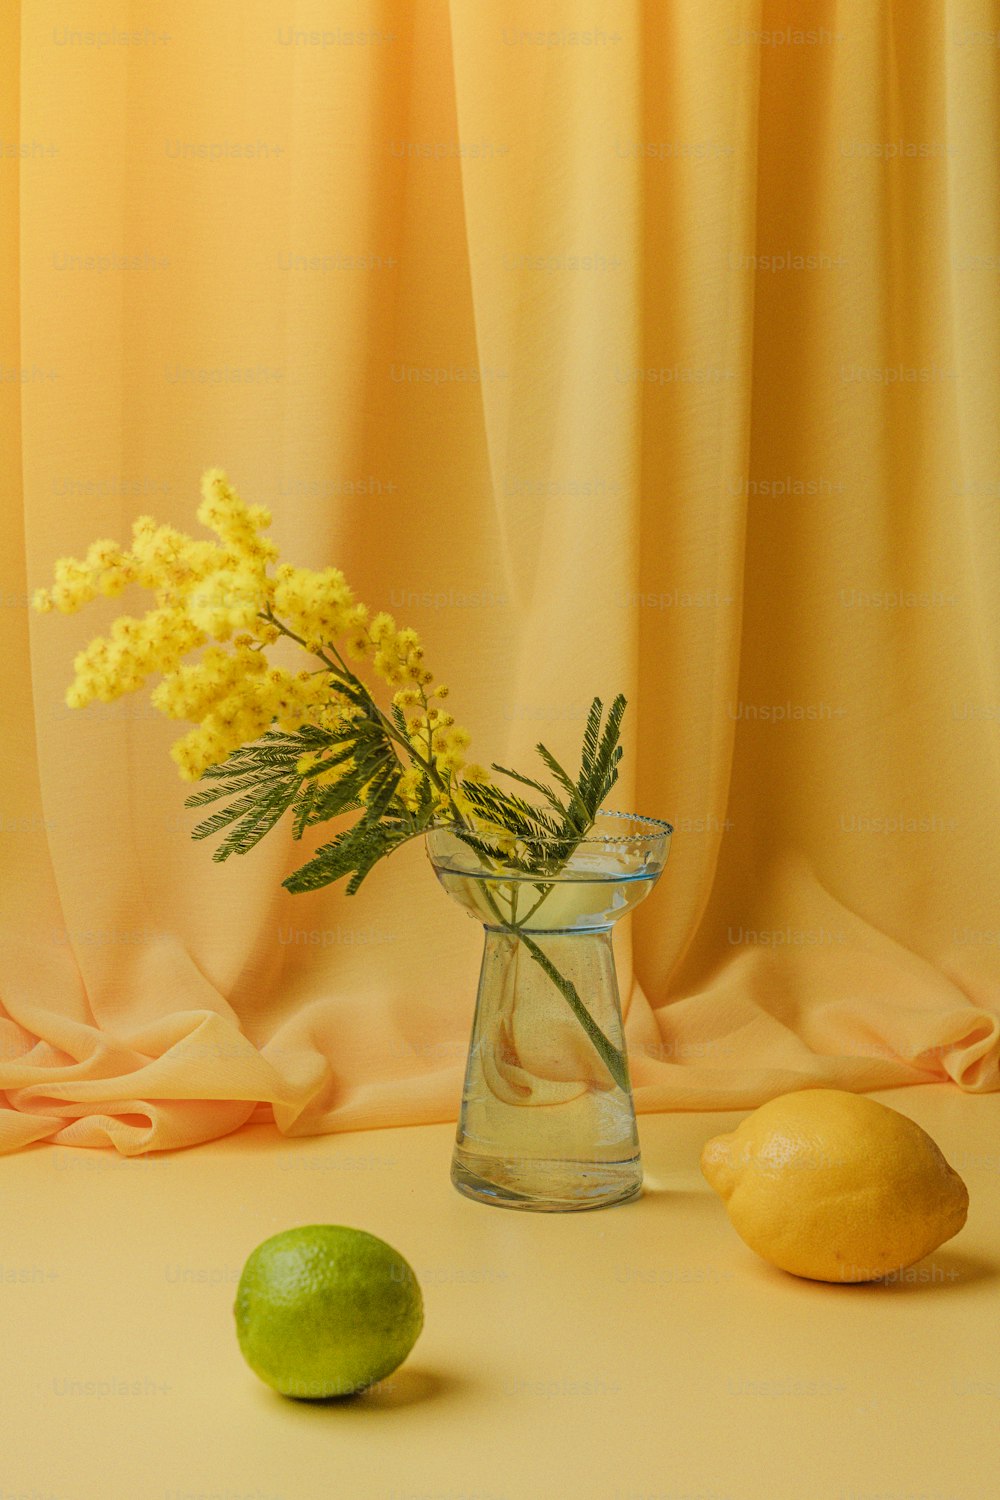 レモンの隣に黄色い花でいっぱいのガラスの花瓶